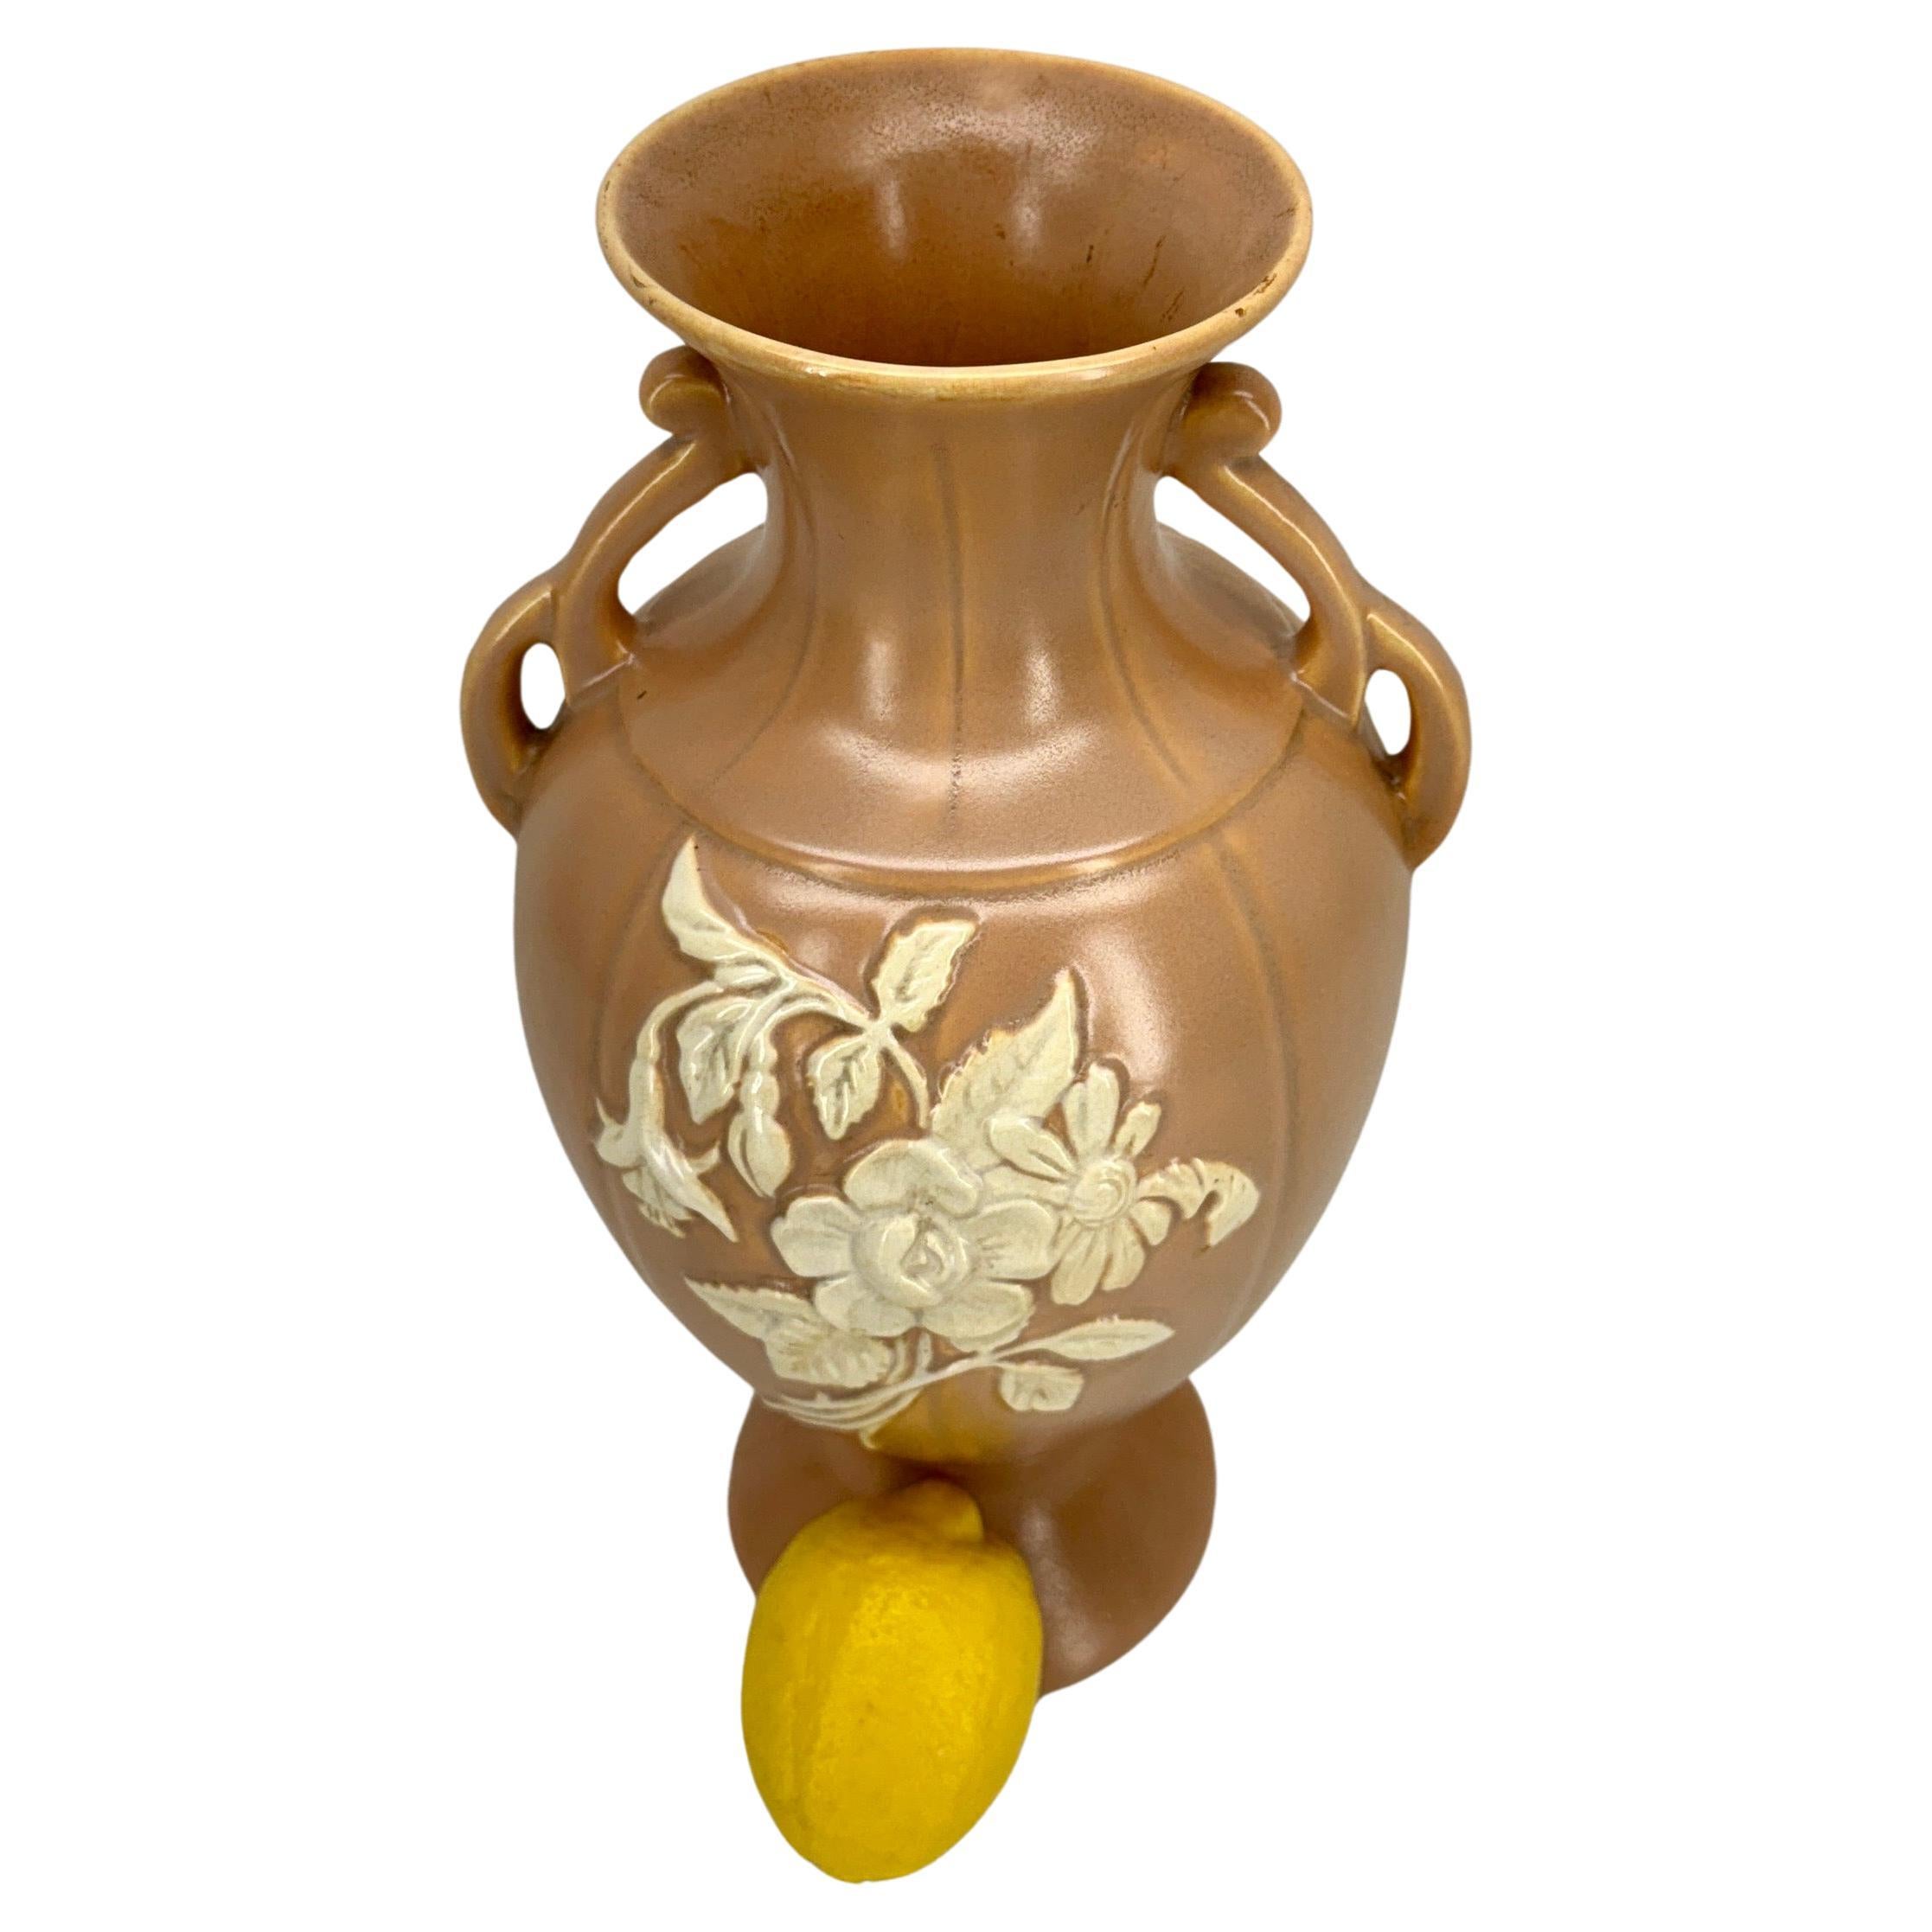 Vase à pêche Weller Art Deco Pottery

Magnifique vase en céramique peint à la main dans les années 1930, de couleur pêche avec un motif floral ivoire. Merveilleux complément pour tout collectionneur.